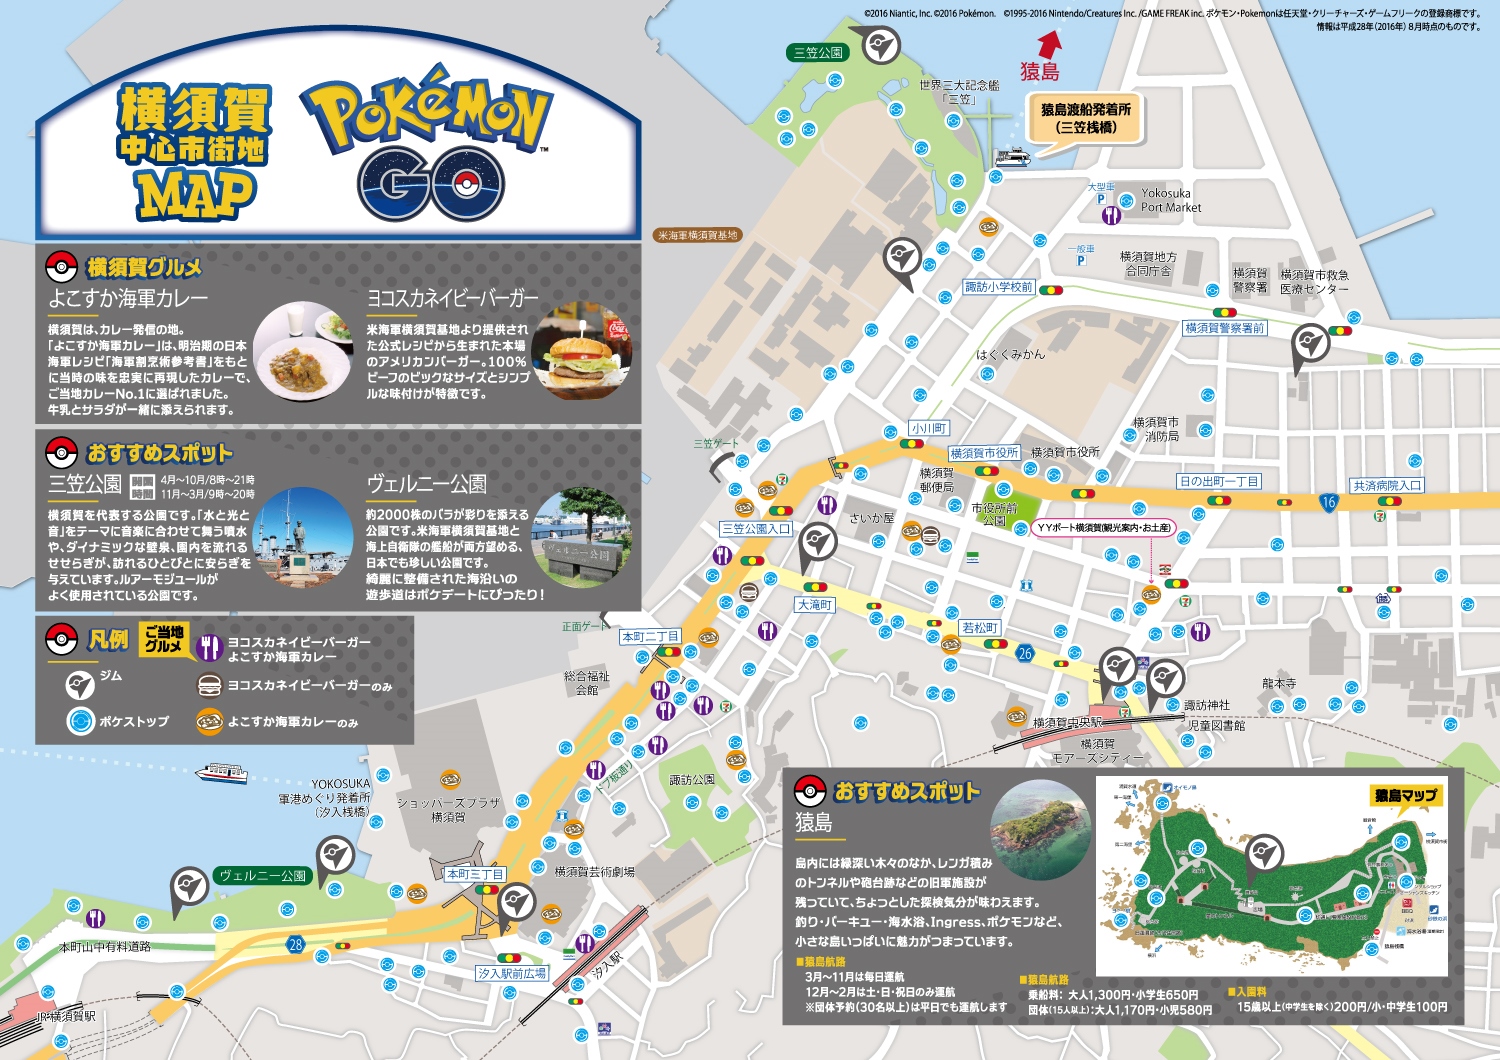 ポケモンgo 横須賀市が ヨコスカgo宣言 を発表 ジムやおすすめスポットが掲載されたmapを公開 Boom App Games